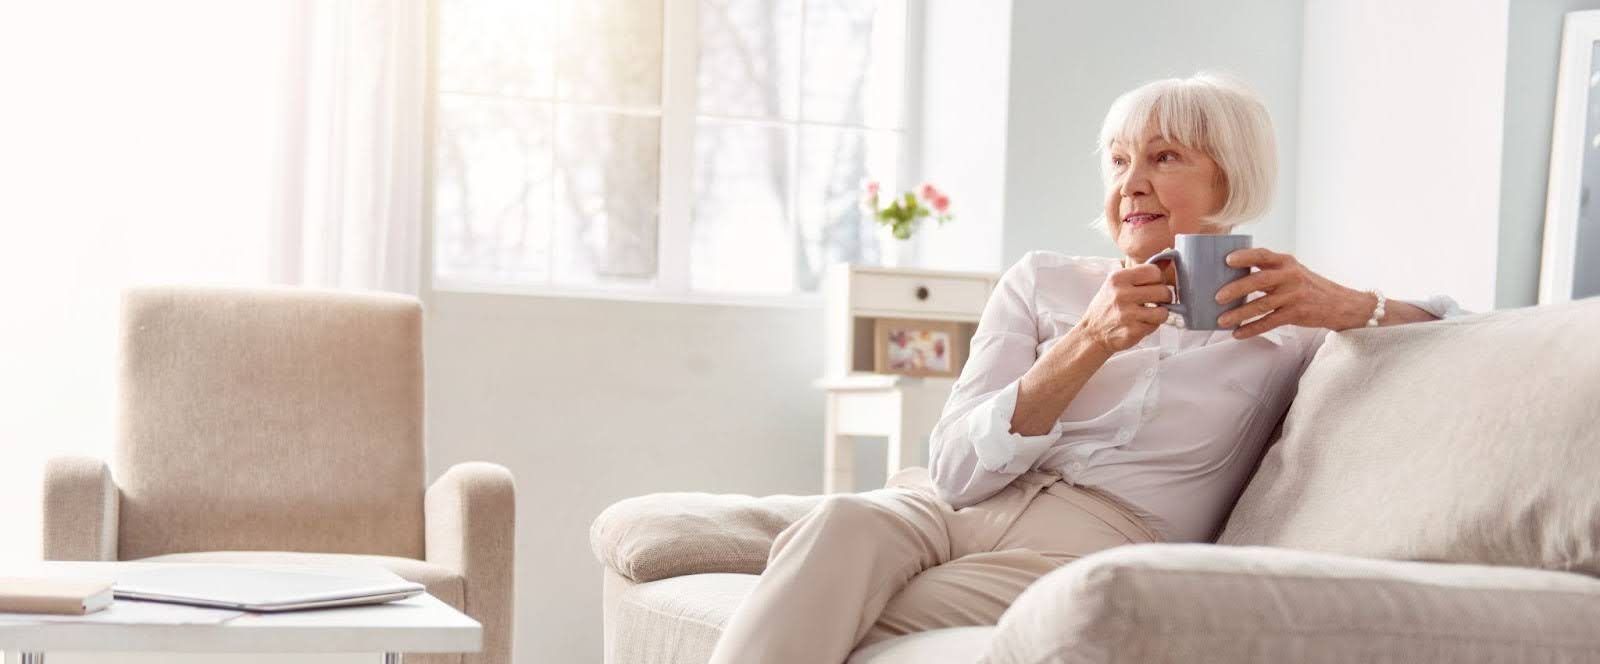 Senior lady sitting on a couch enjoying a coffee